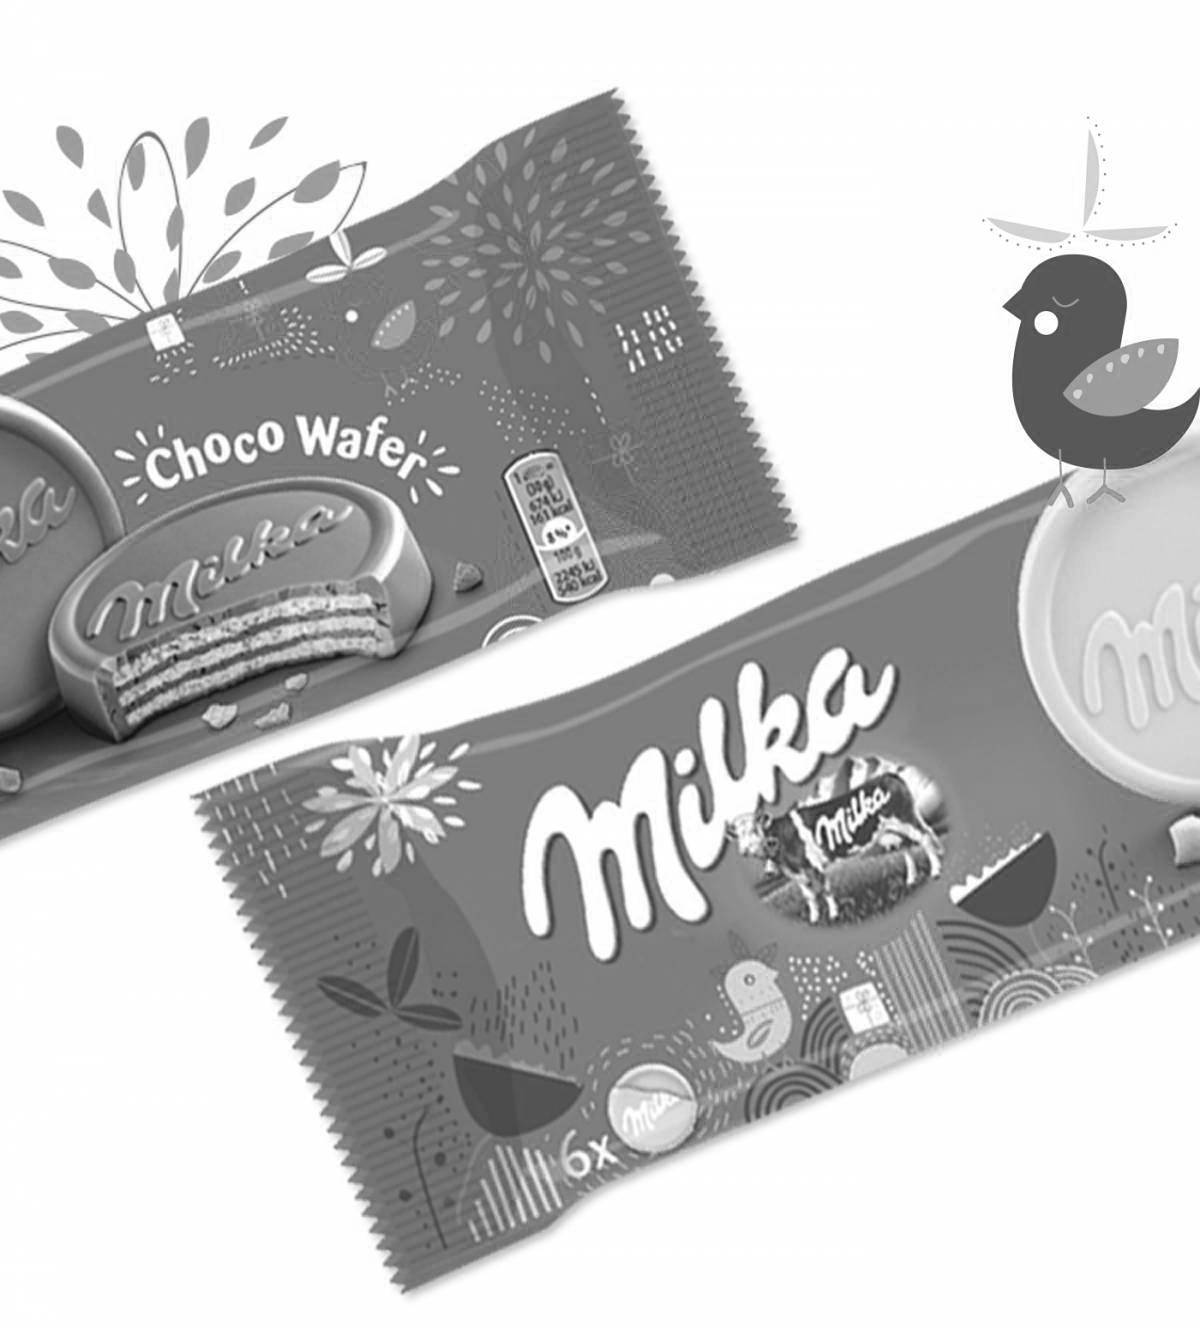 Milka chocolate #3